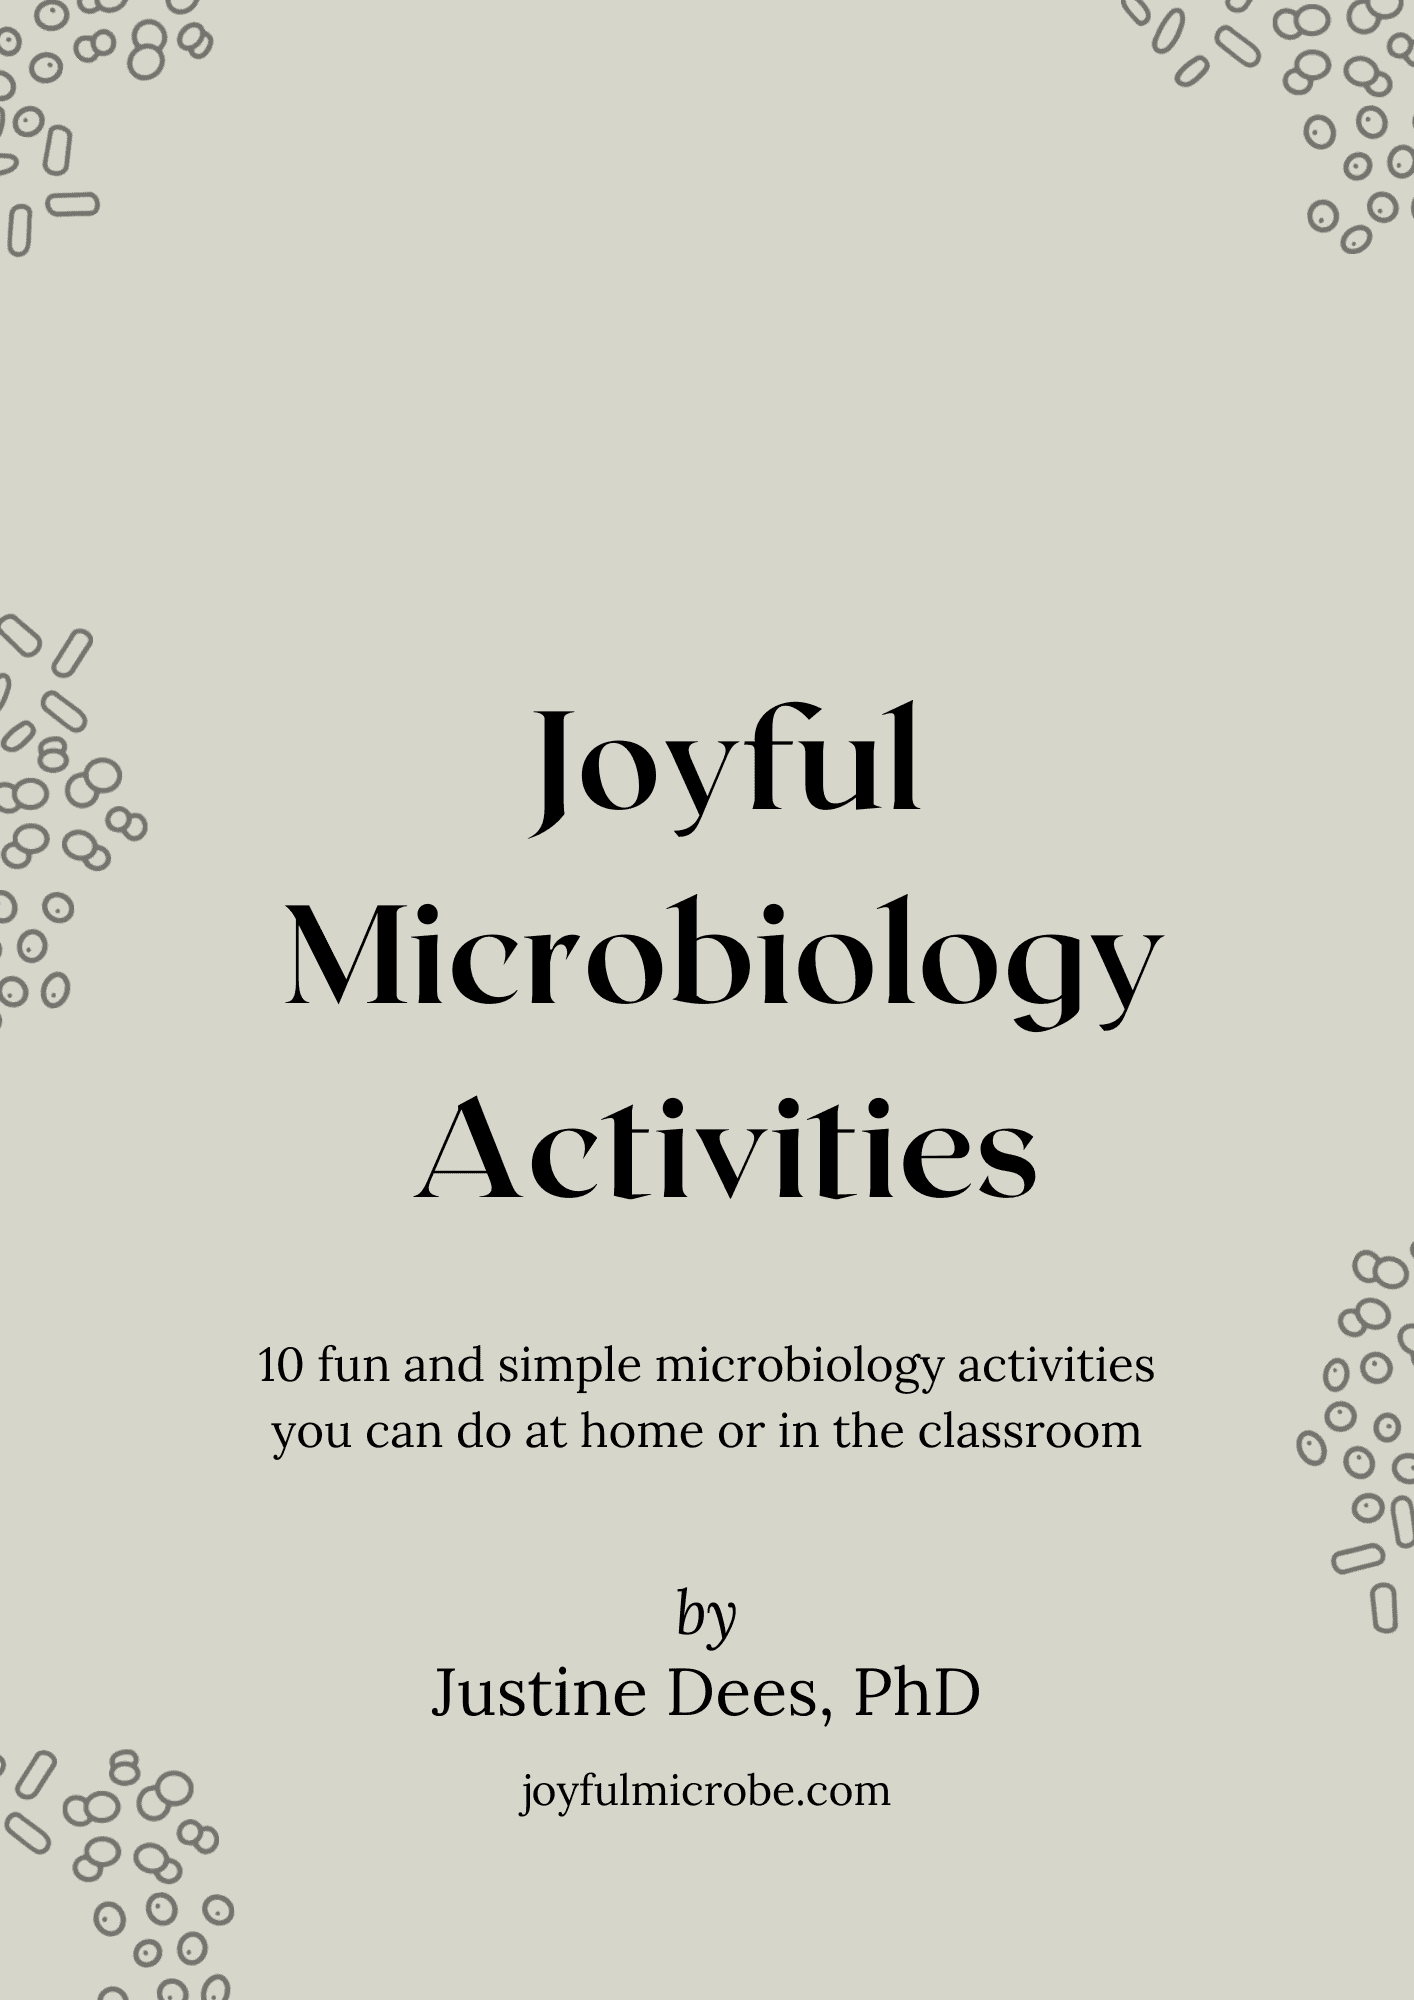 Joyful Microbiology Activities ebook cover by Justine Dees, PhD